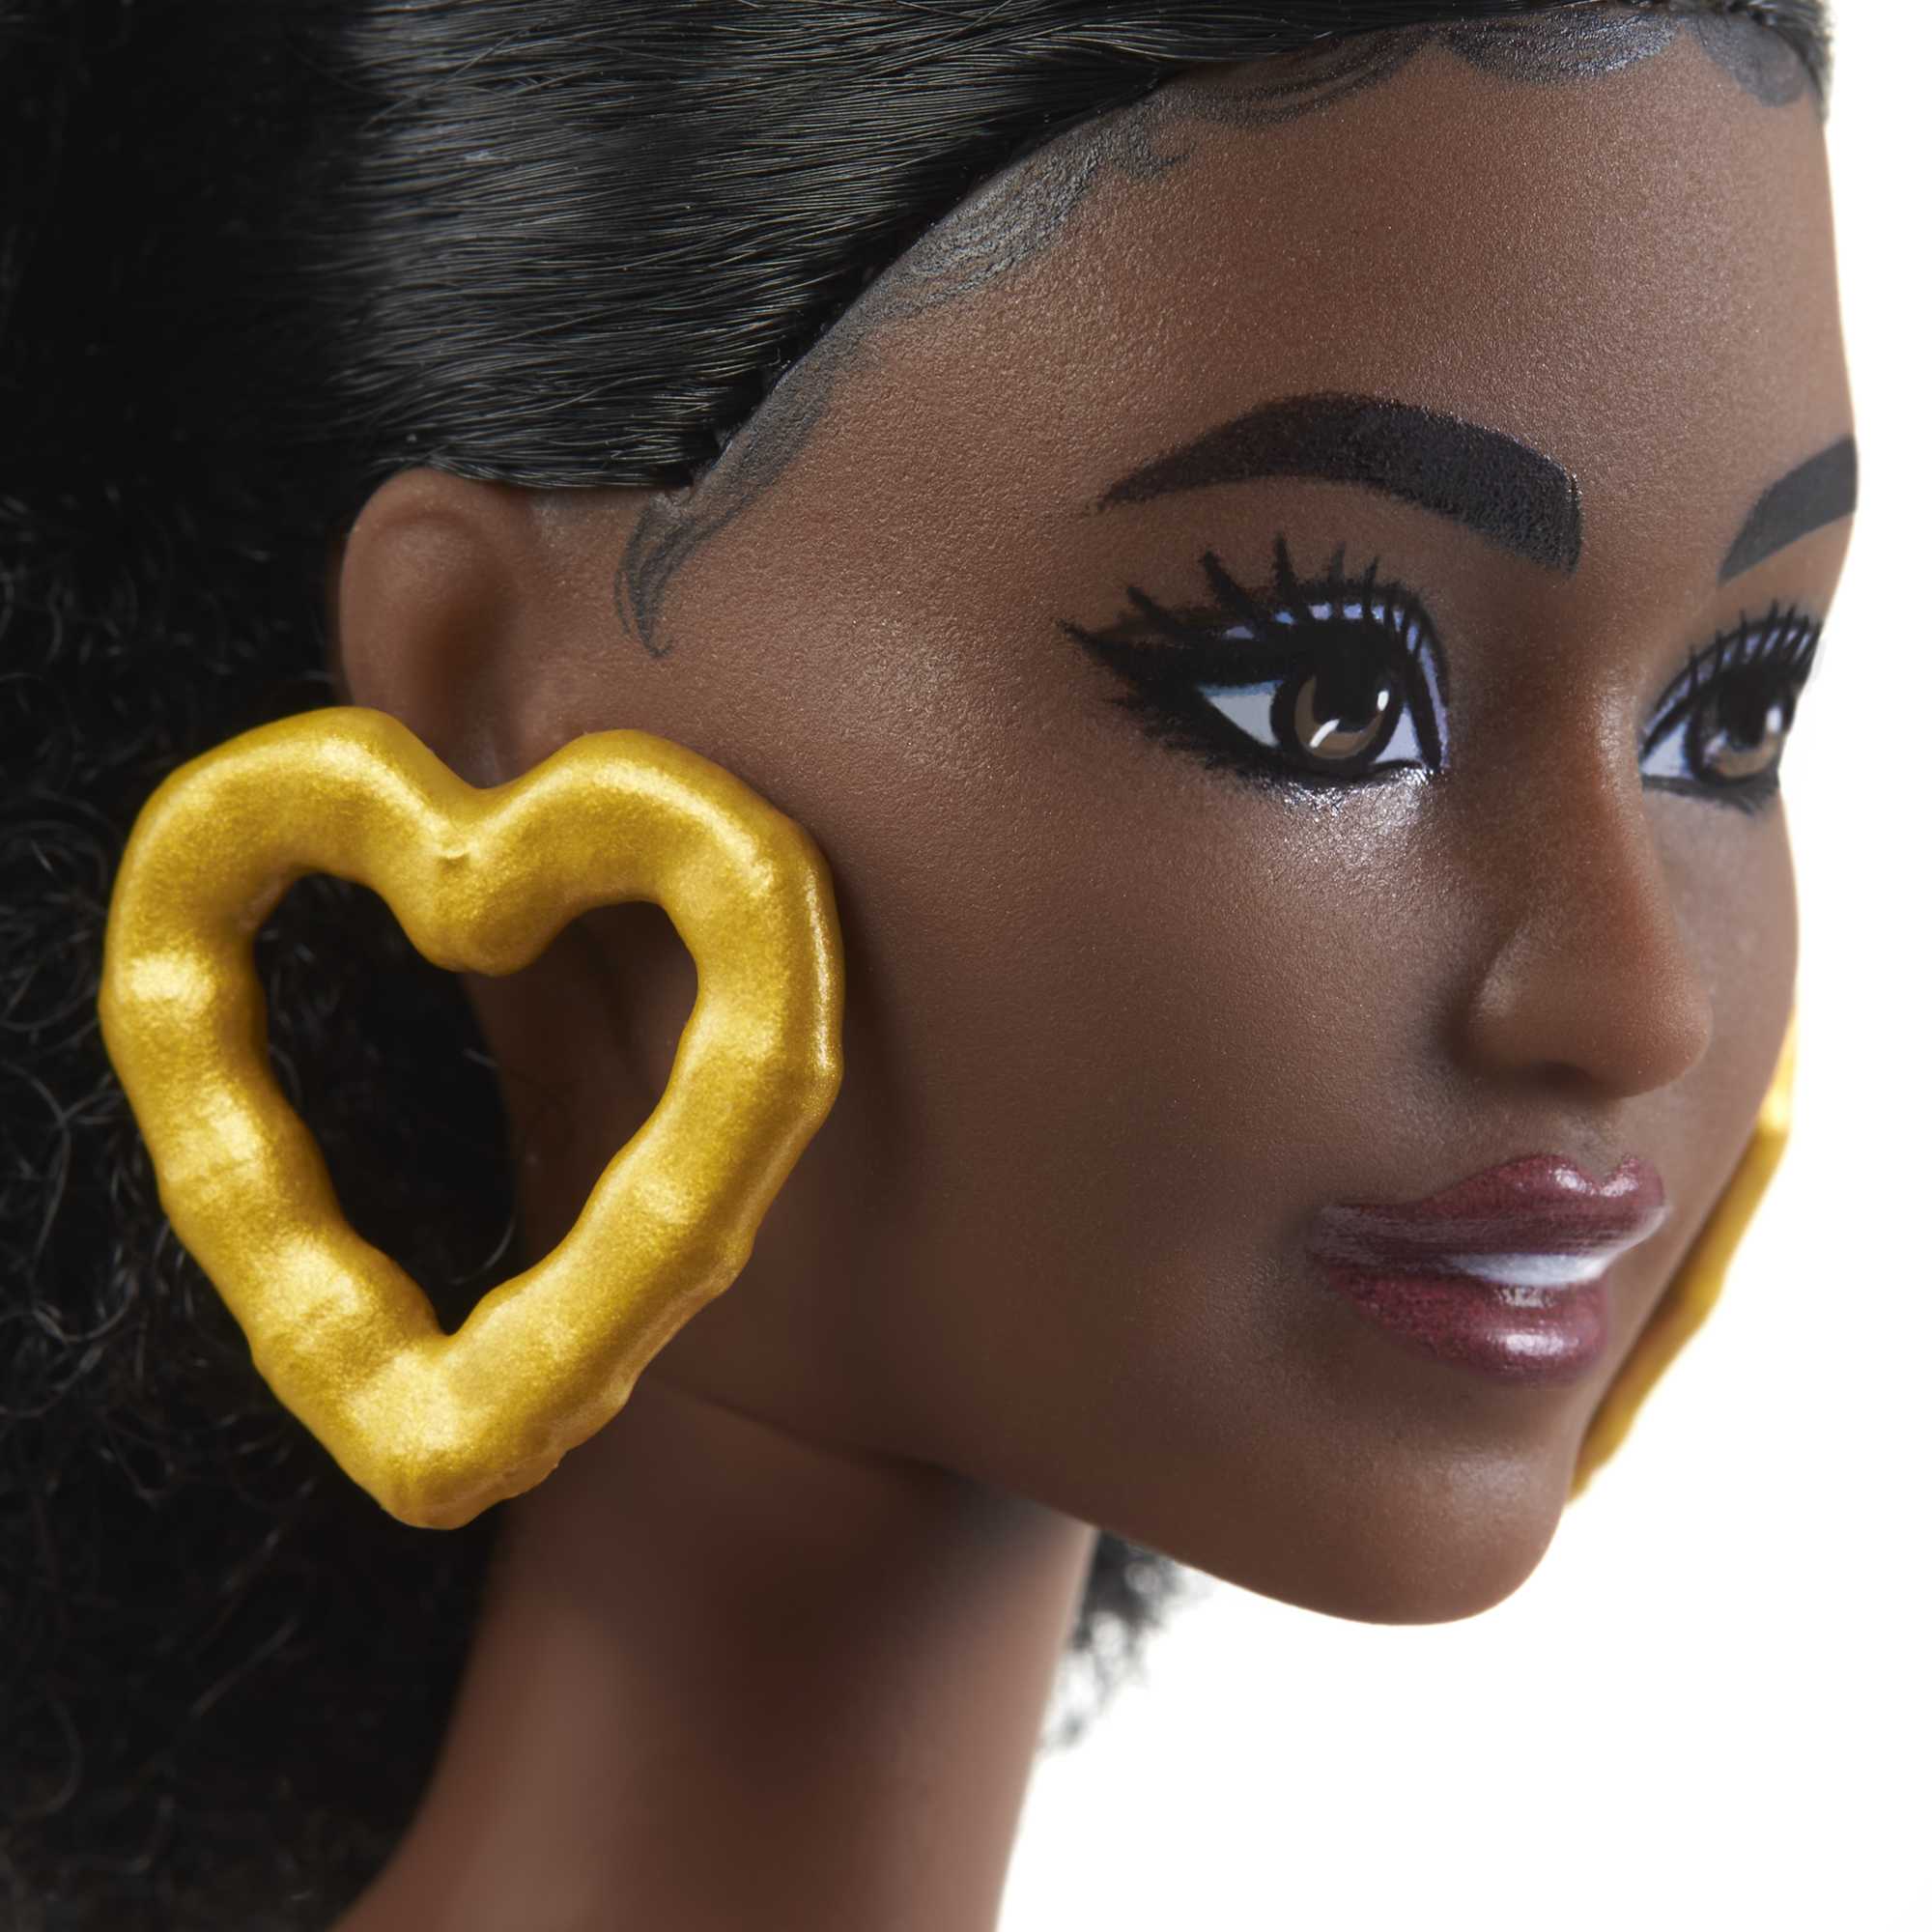 Barbie Fashionistas Petite Doll | Black Hair | MATTEL